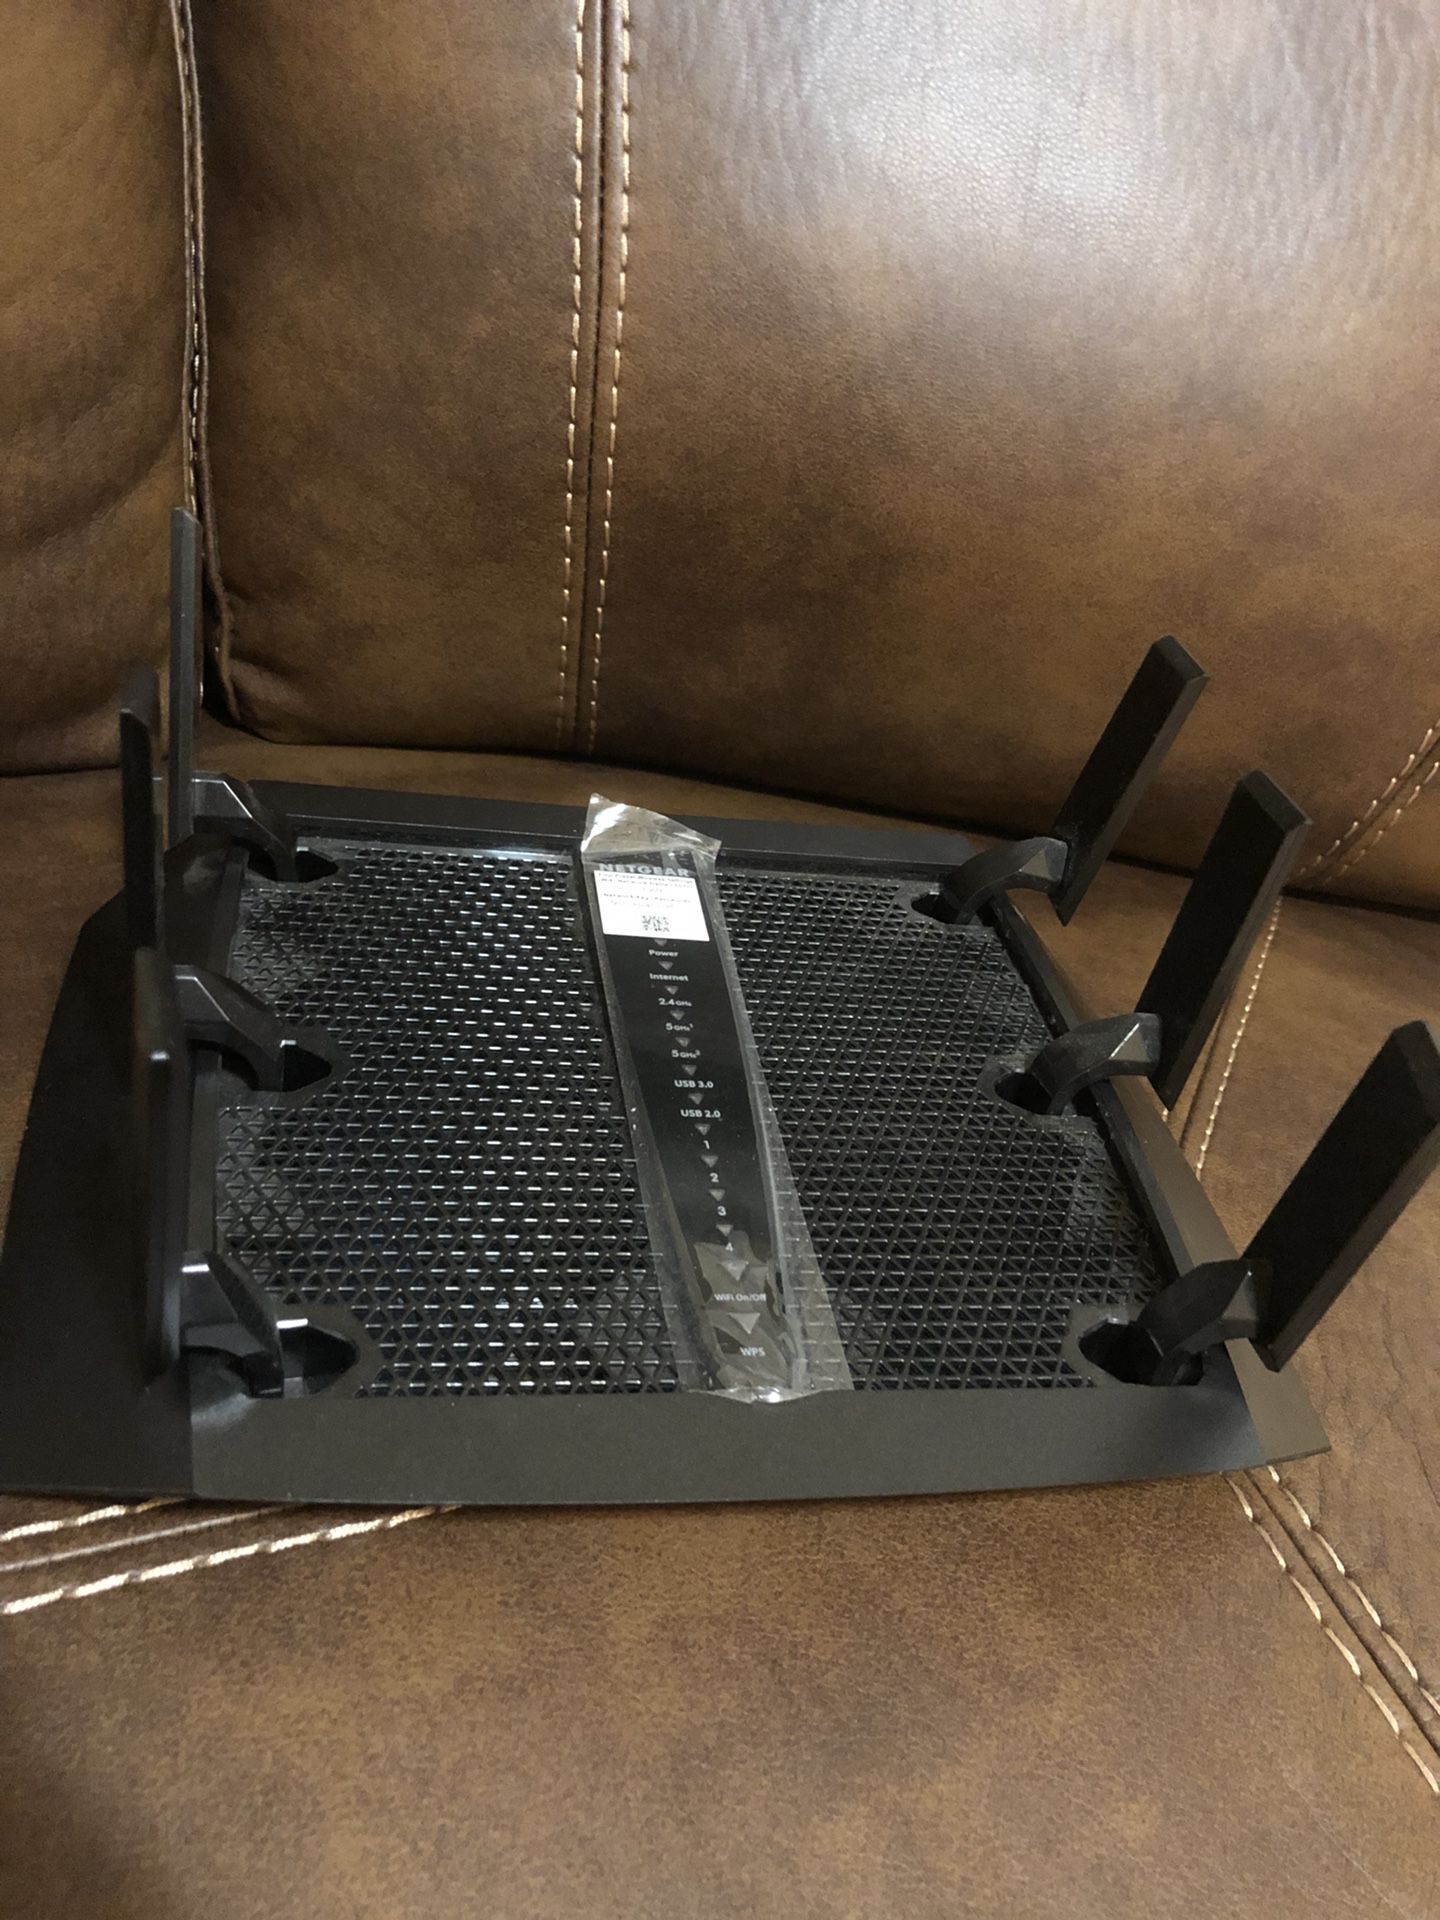 Netgear Nighthawk X6 (AC3200 Tri-Band WiFi Router Model R8000)